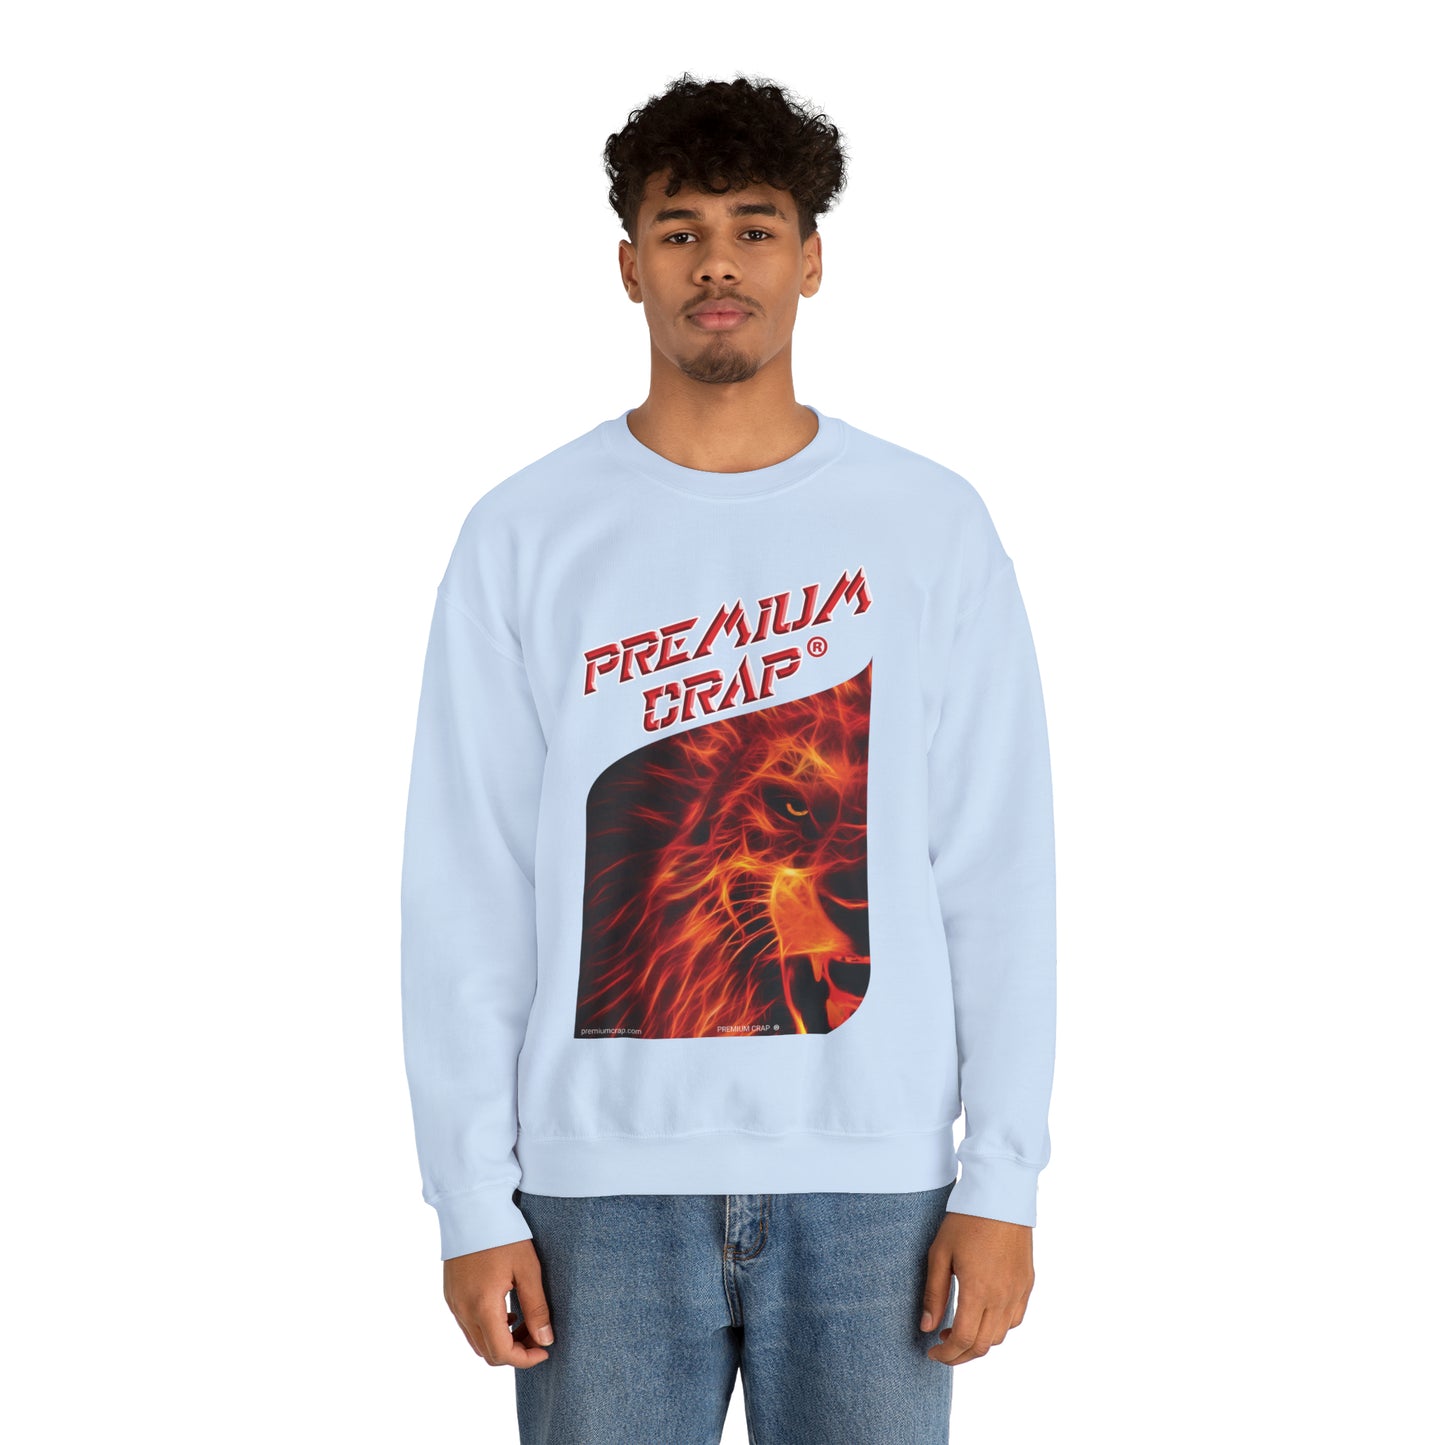 Premium Crap Waggish Sweatshirt